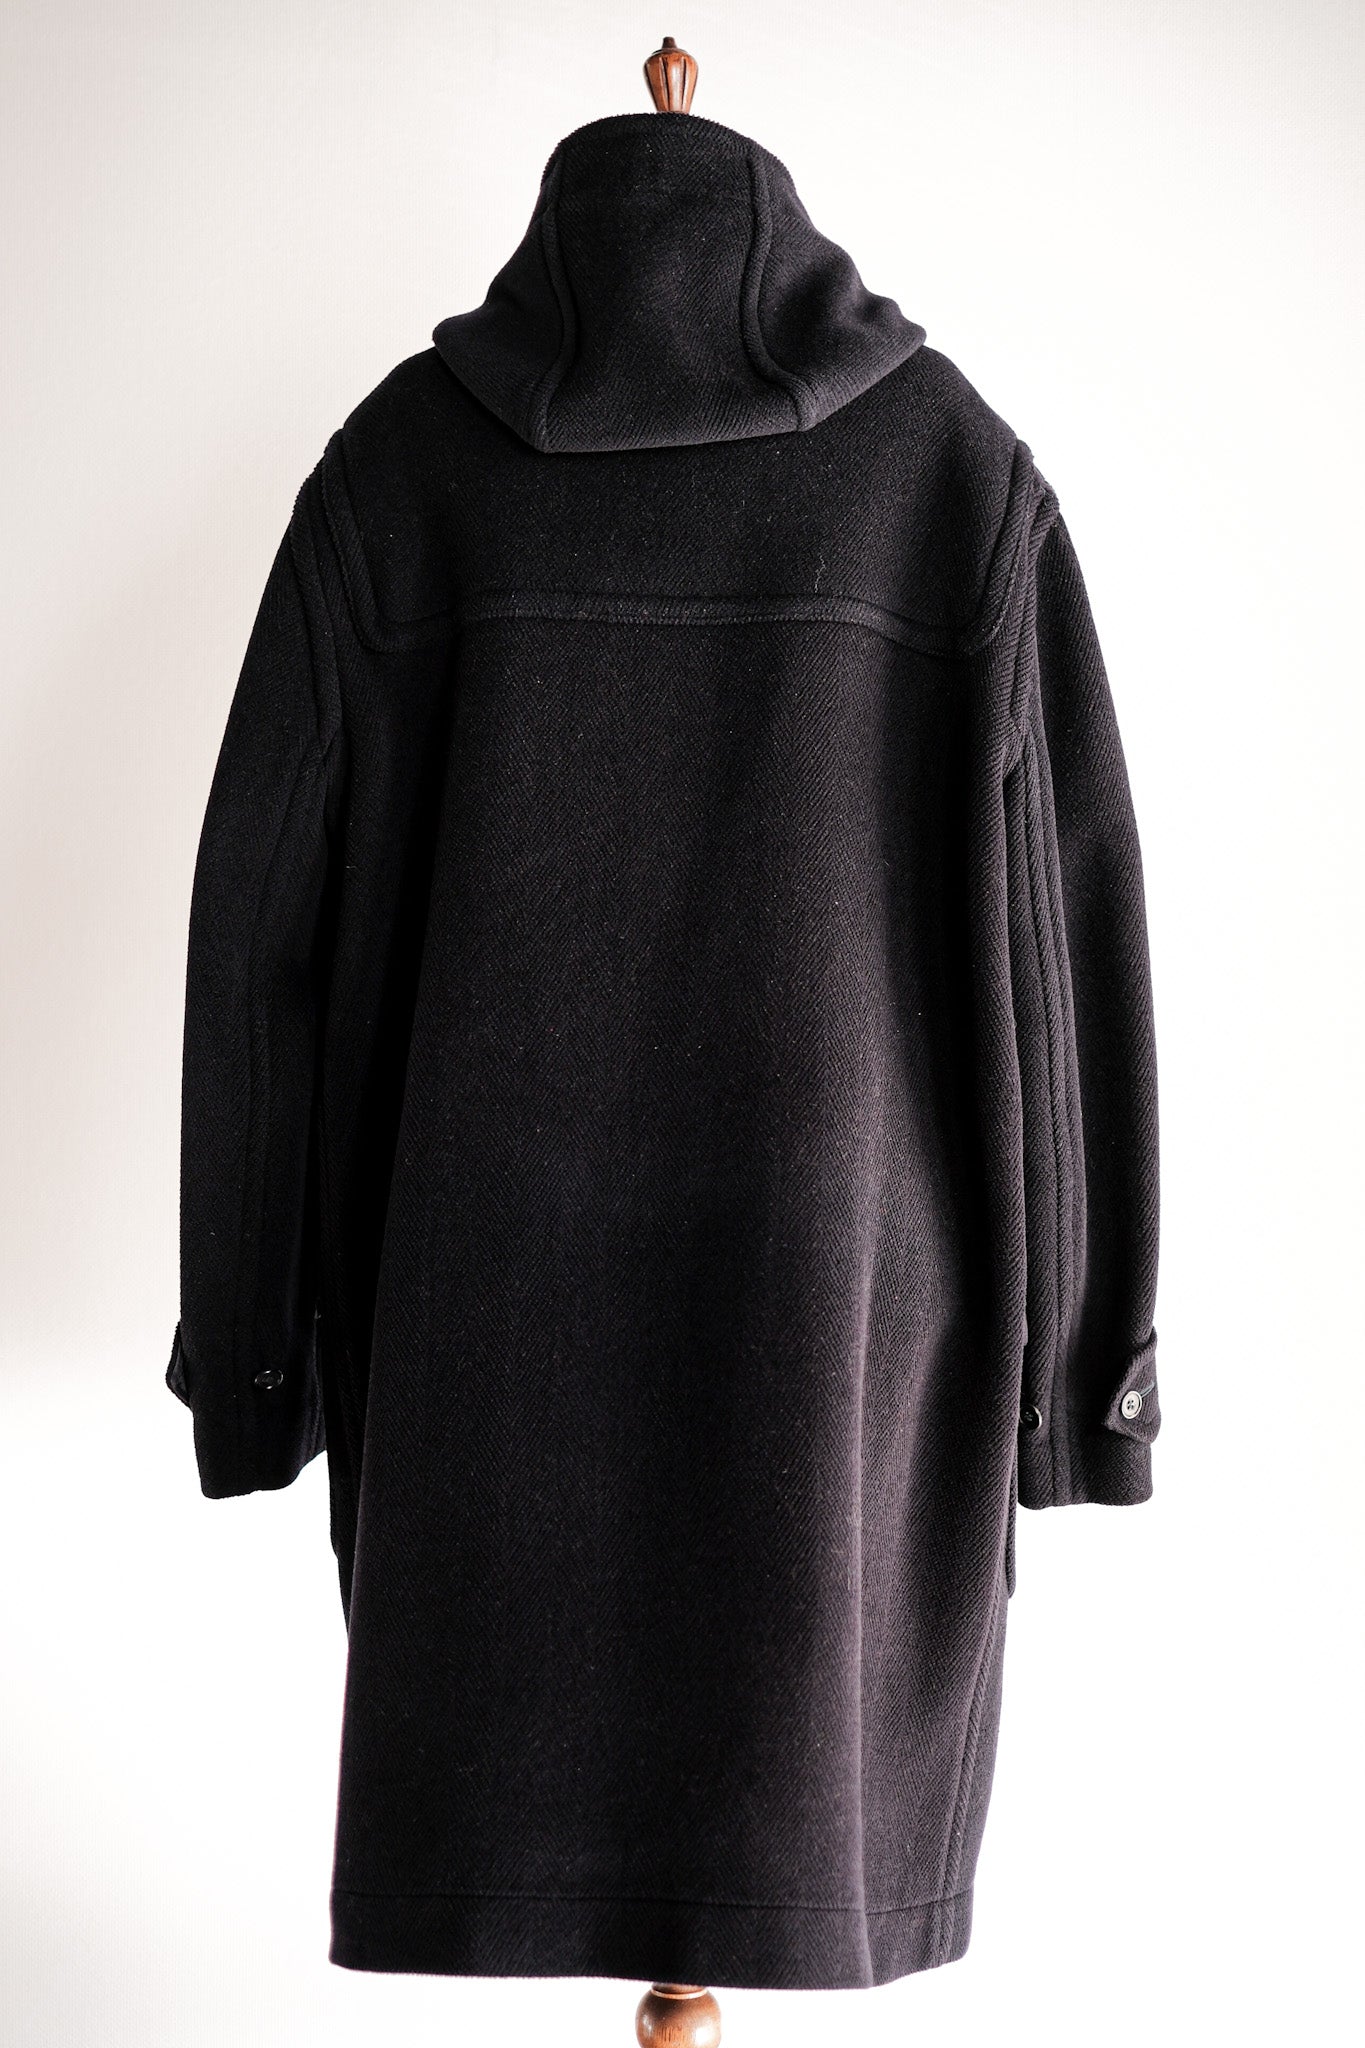 [~ 90 년대] Old England Paris Wool Duffle Coat "Moorbrook"